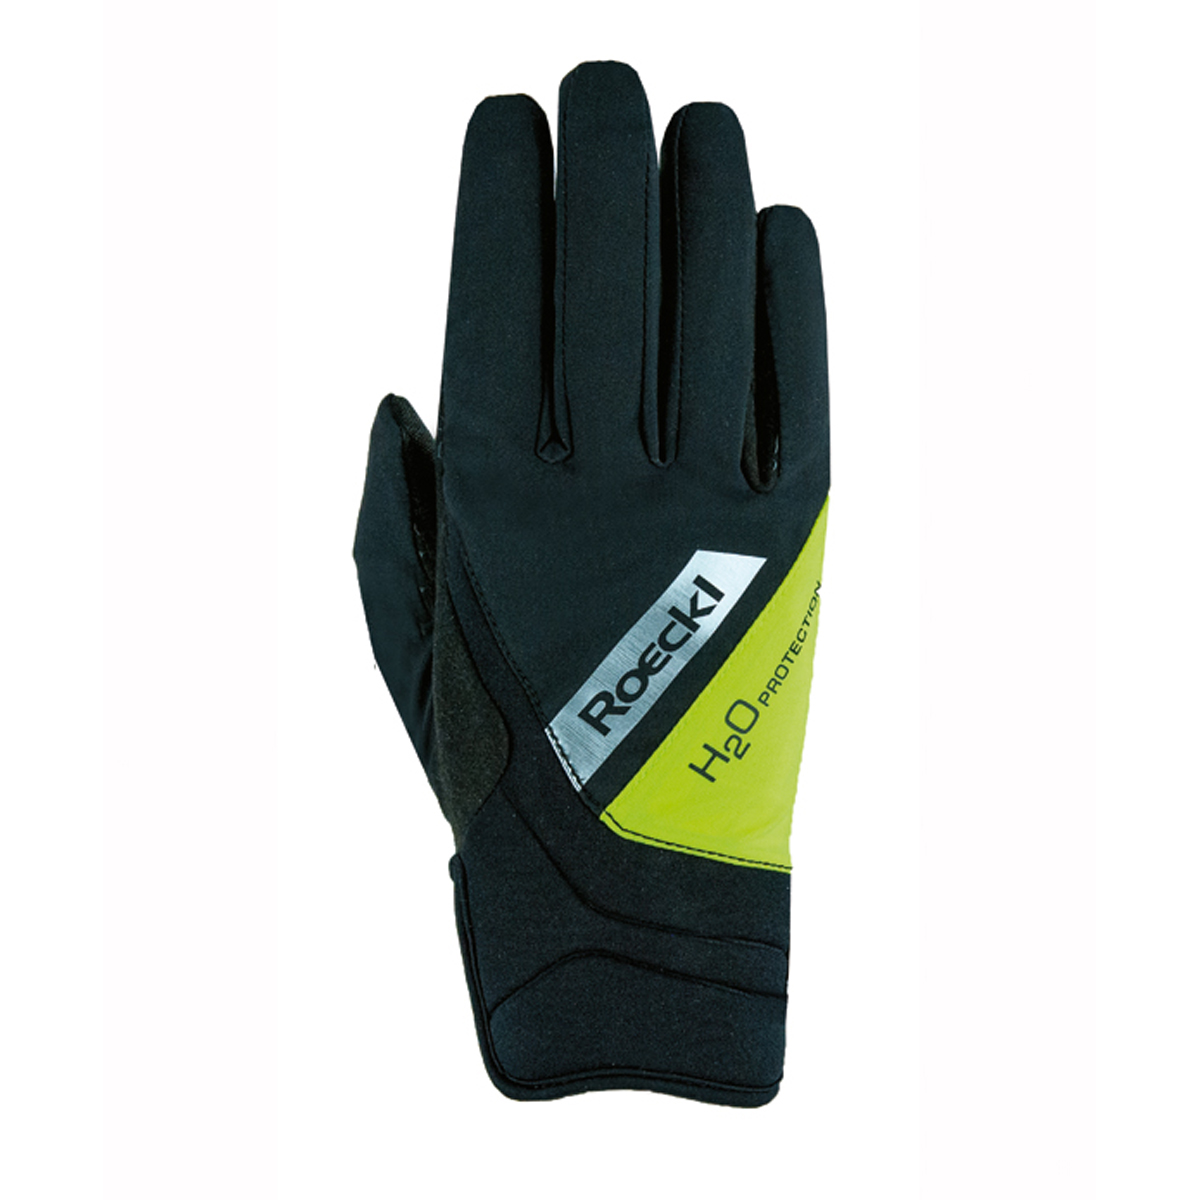 Handschoenen Roeckl Waregem, 6 in zwart/geel